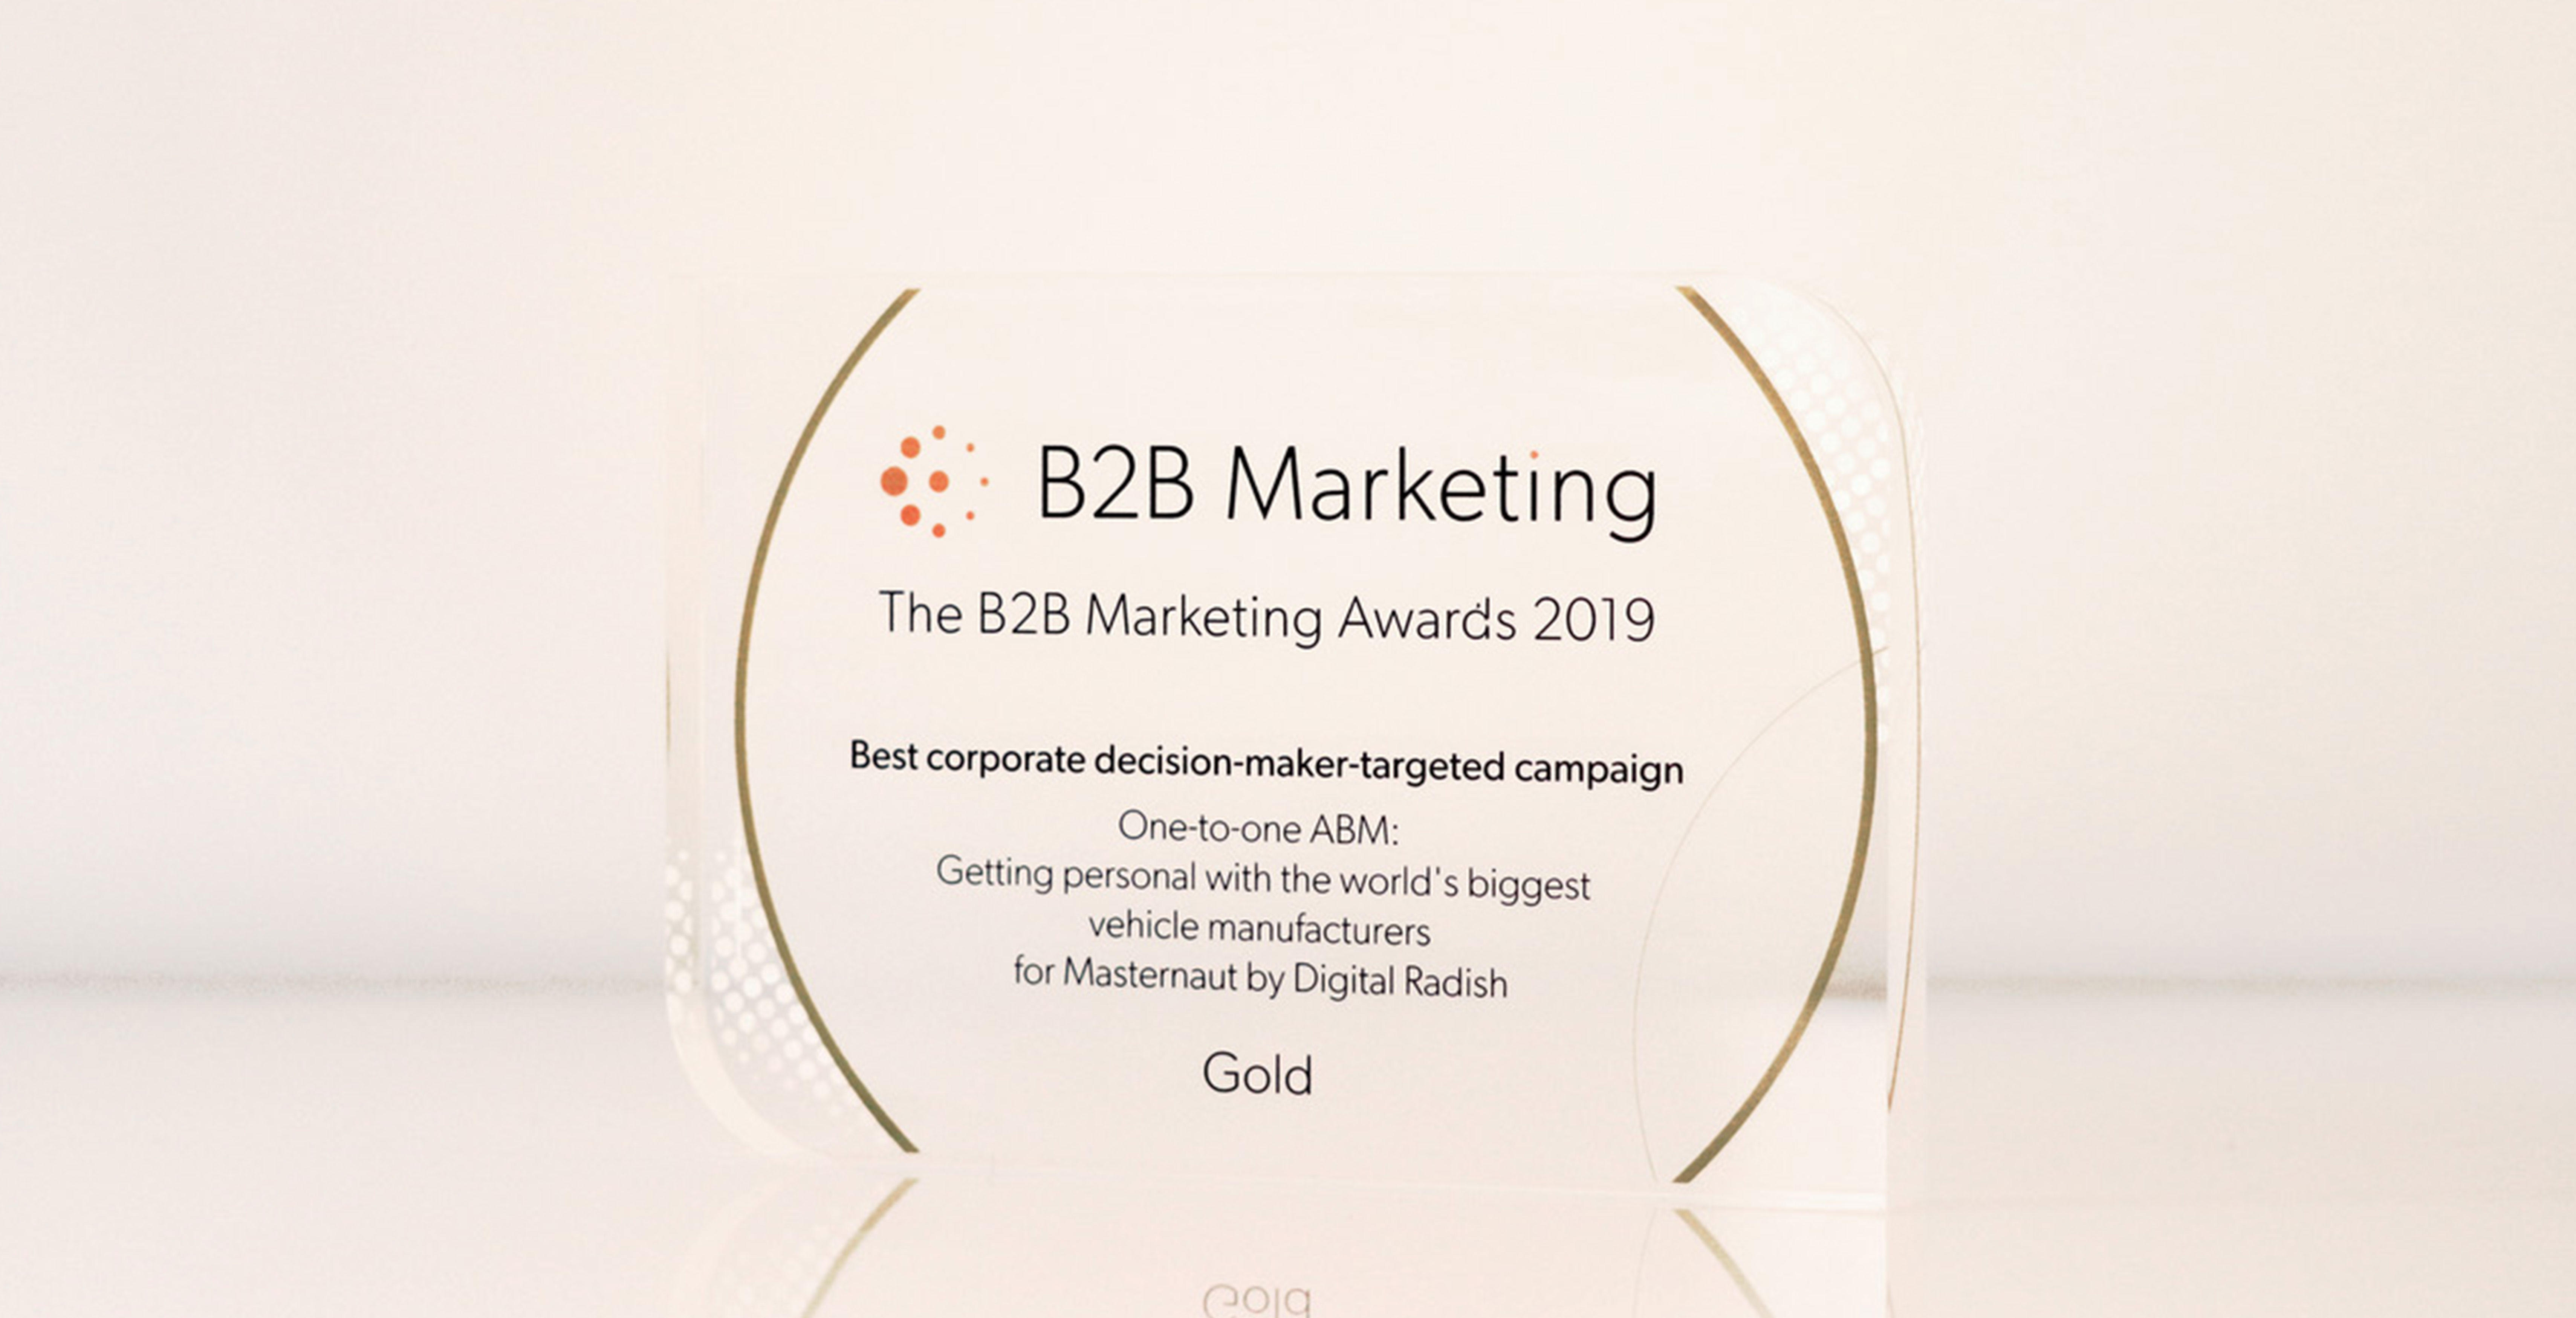 Gold B2B Marketing Awards winner Digital Radish